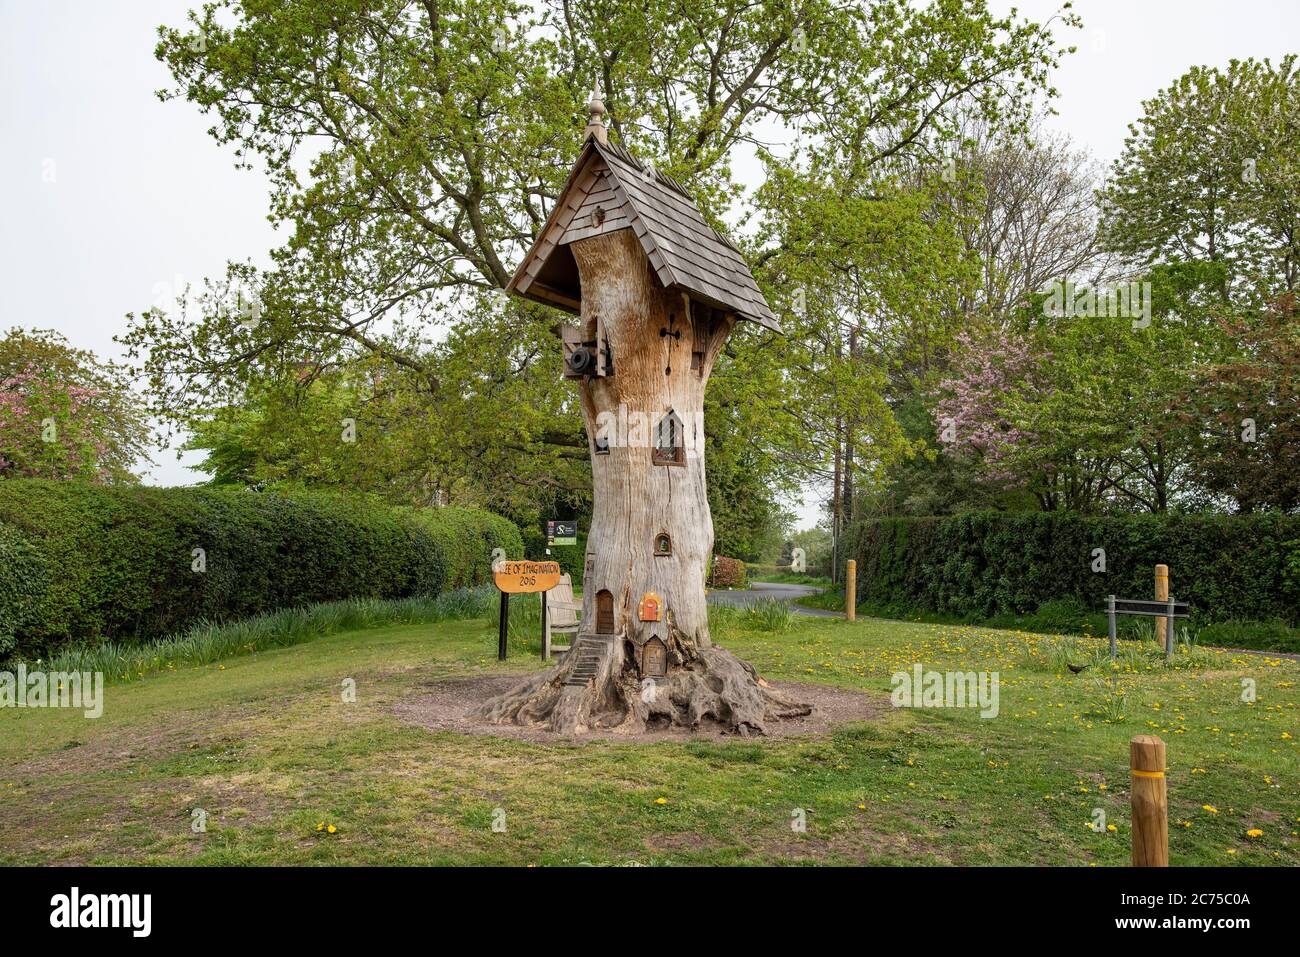 L'albero dell'immaginazione, il più basso, Knutsford,. Cheshire. Foto Stock